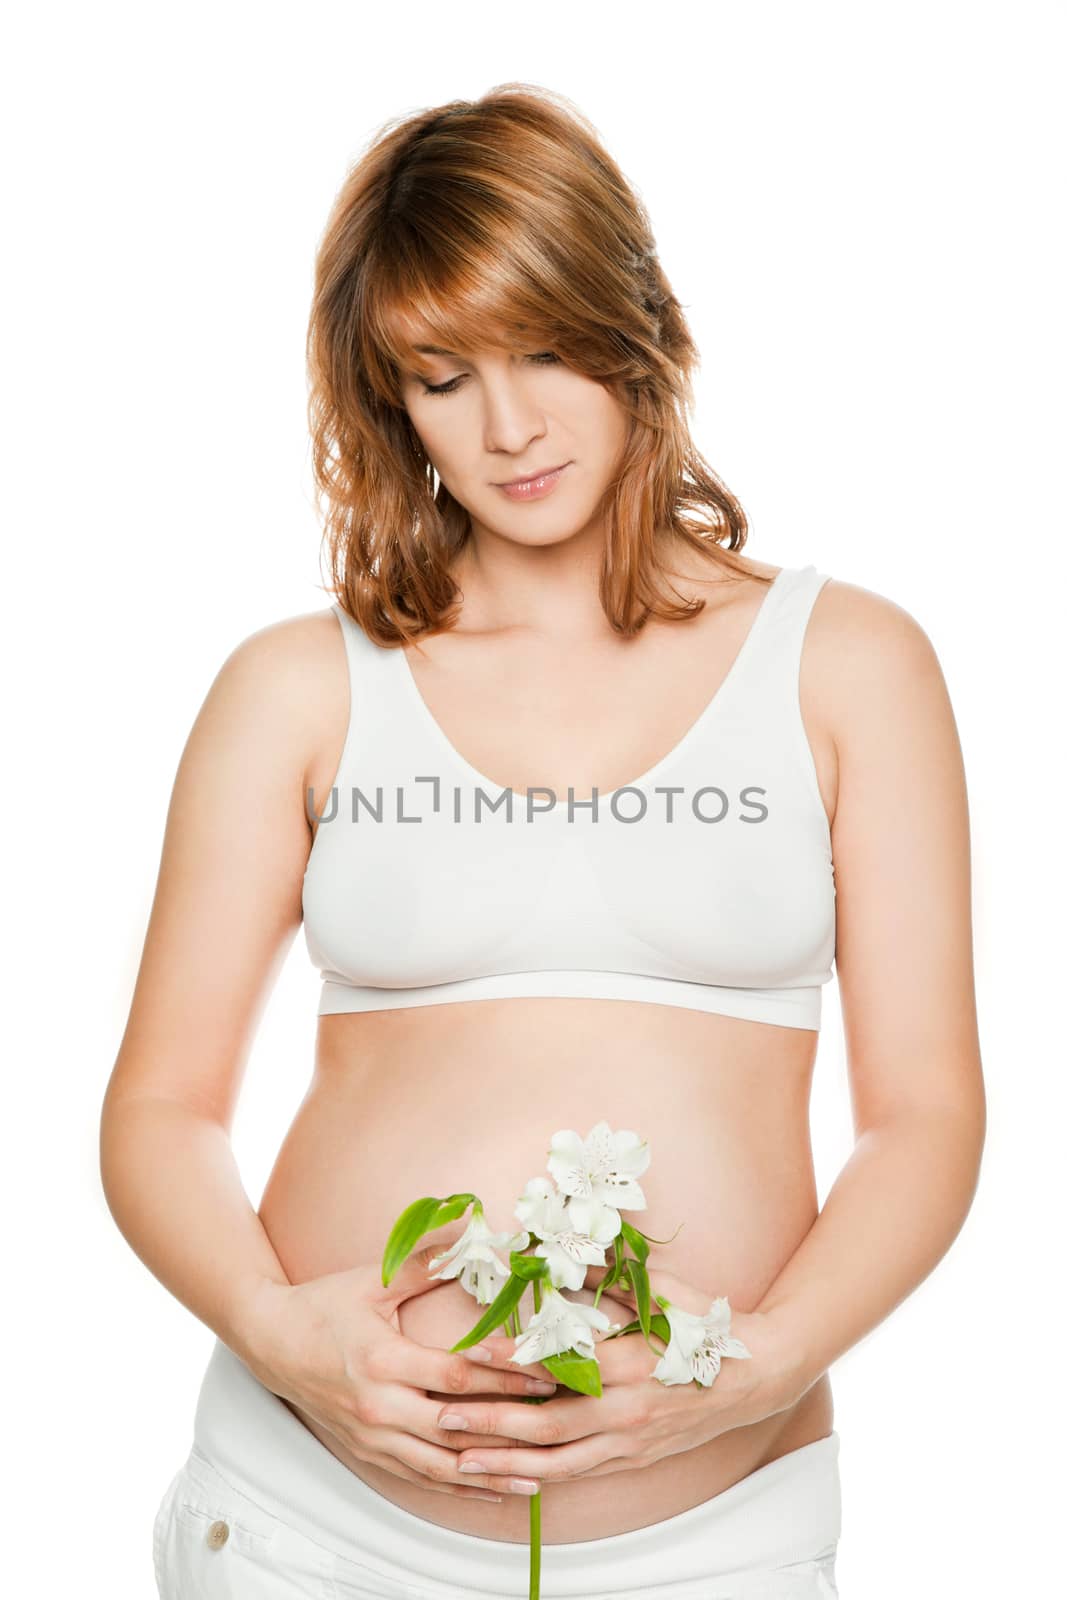 Pregnant woman by vilevi